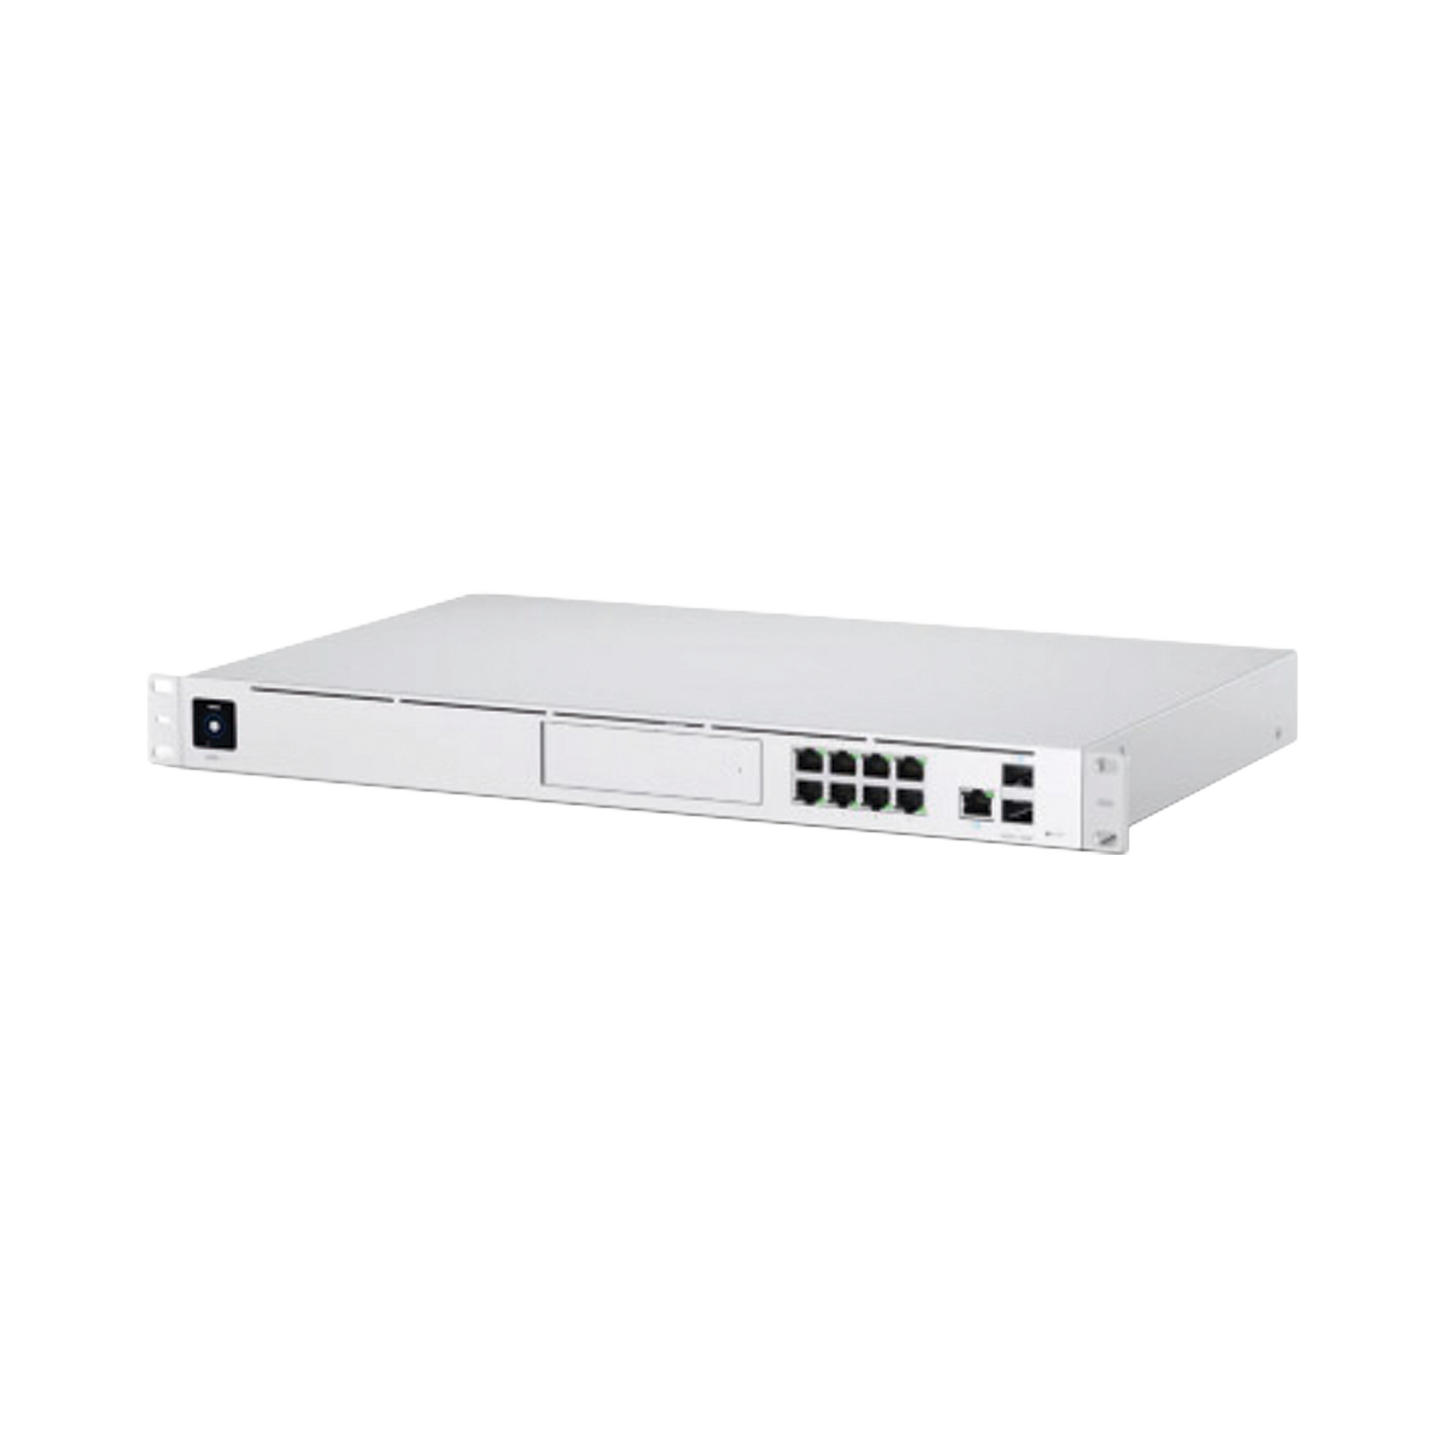 UniFi OS Console: Dream Machine Pro, con 1 puerto WAN Gigabit RJ45, 1 puerto WAN 10G SFP+ / 8 puertos LAN Gigabit RJ-45, y una bahía de HDD 3.5" (No incluye HDD), Integra todas las aplicaciones UniFi